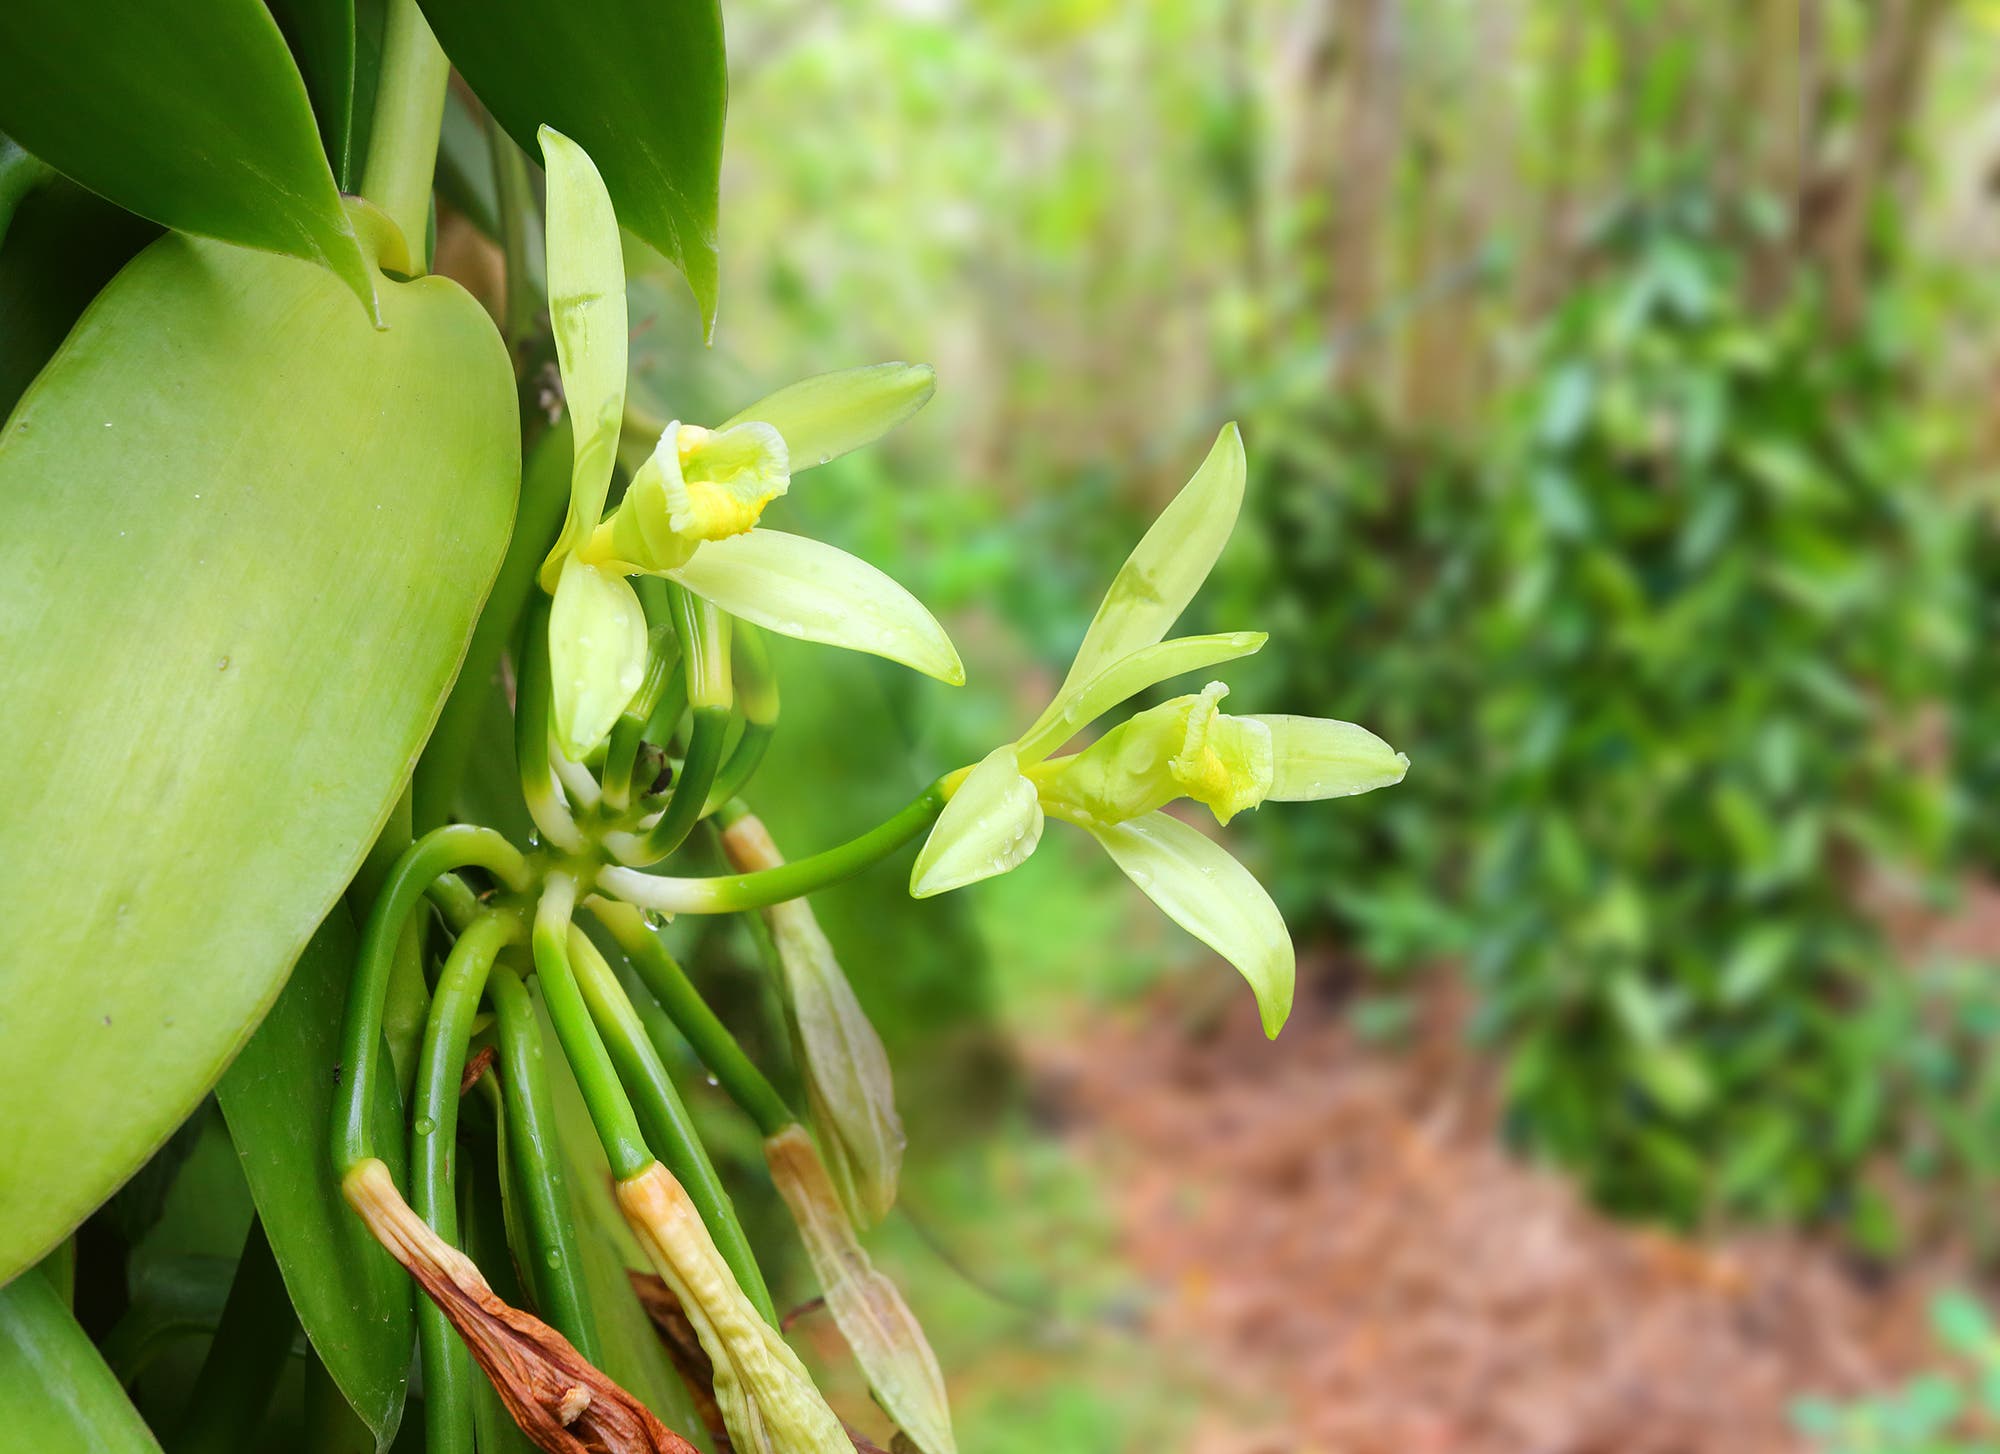 Nahaufnahme eines Blütenstands der Vanille mit zwei grünlichen, ausladenden Blüten 